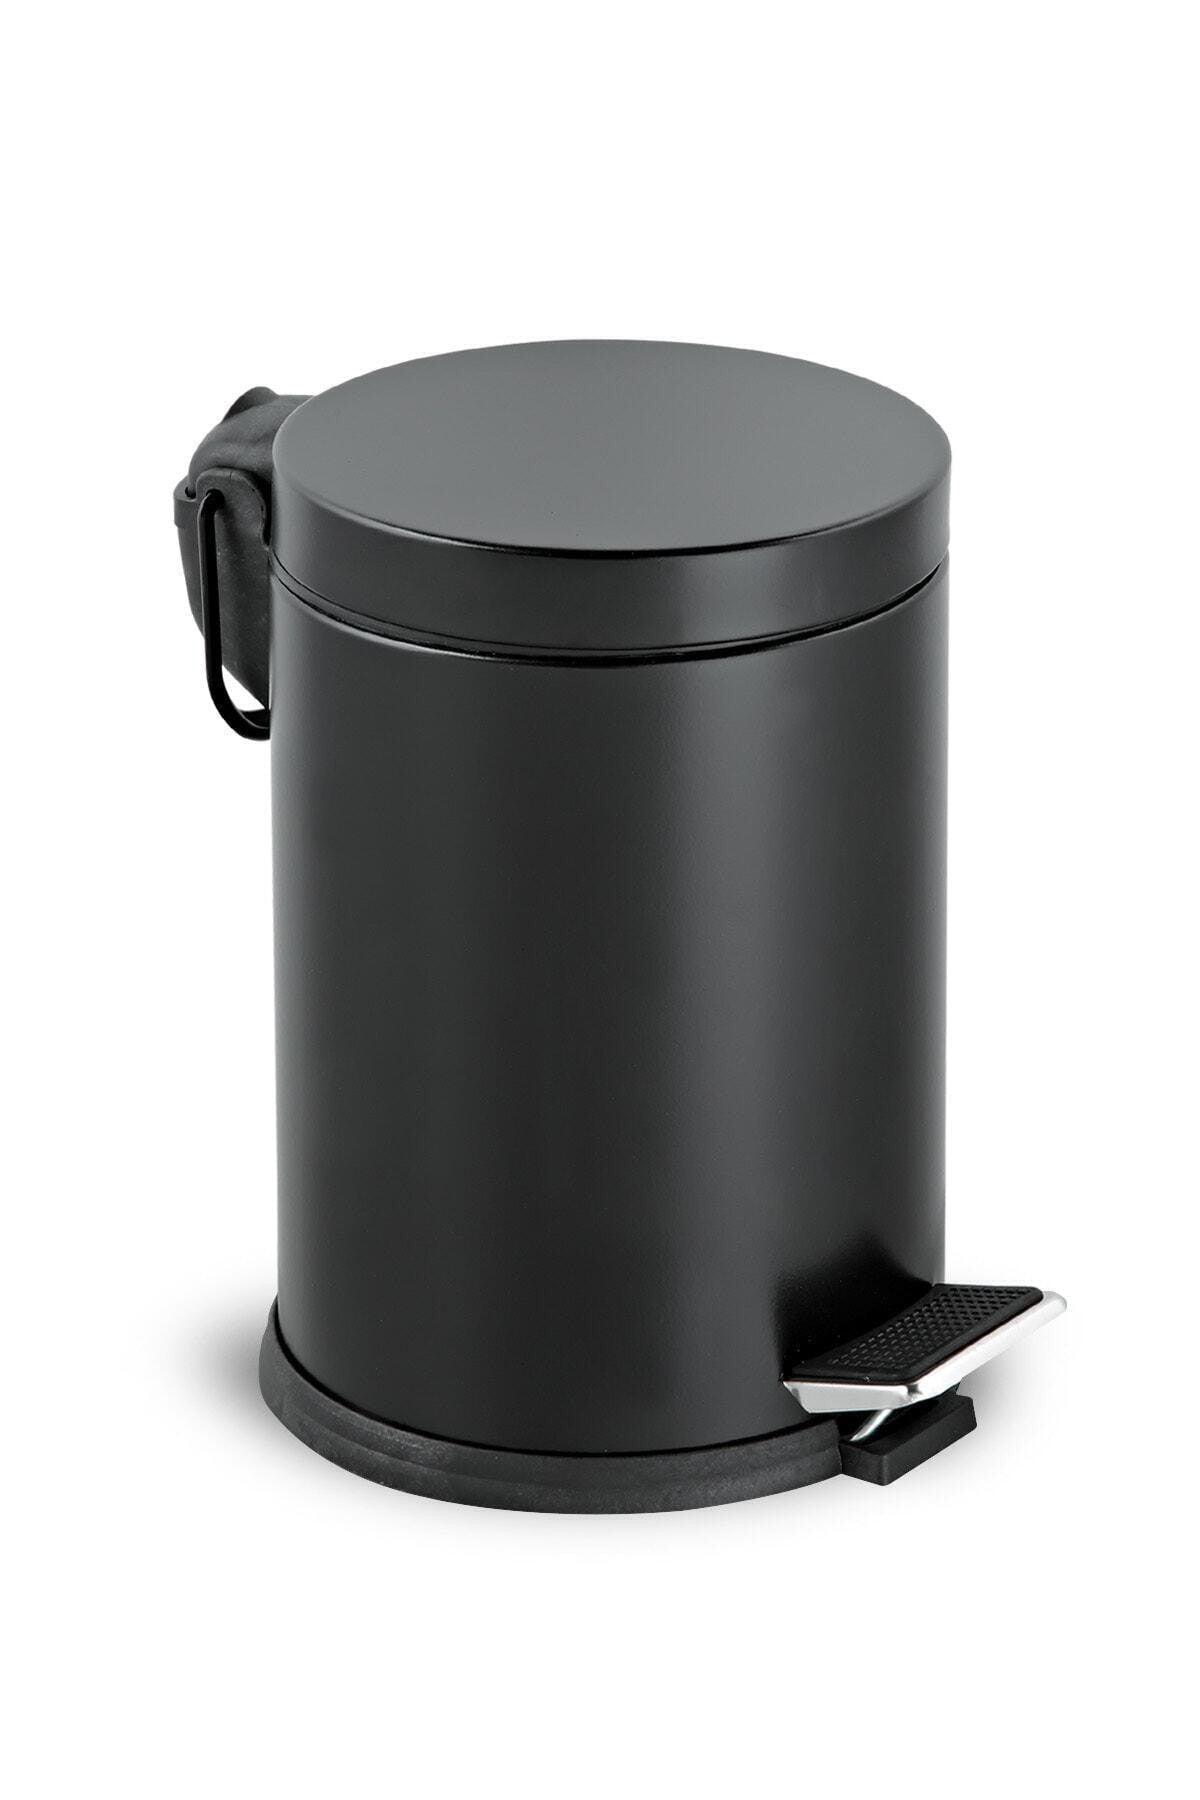 Toilet Bathroom Balcony Kitchen 3 Liter Black Pedal Dustbin Waste Bin - Swordslife